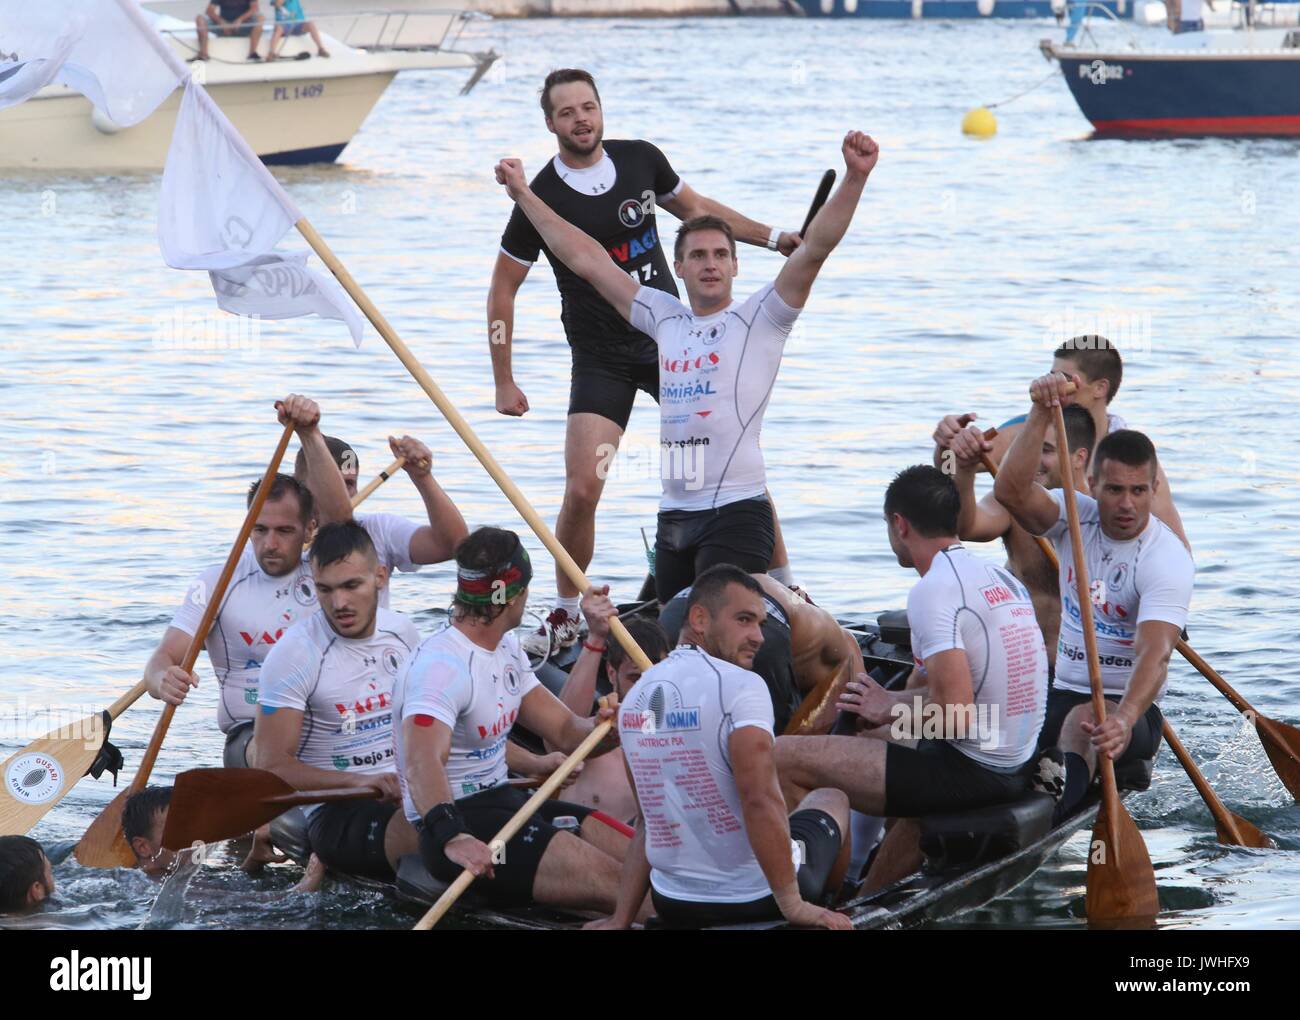 (170813) - ploce (Kroatien), August 13, 2017 (Xinhua) - die Spieler von Team Piraten Sieg feiern nach dem 20 Marathon Ladja, einem 22,5 km Boot Rennen am Fluss Neretva in Ploce, Kroatien, am 12.08.2017. Insgesamt 30 Boote und 300 Ruderer nahmen an der traditionellen Veranstaltung. (Xinhua / Ivo Cagalj) Stockfoto